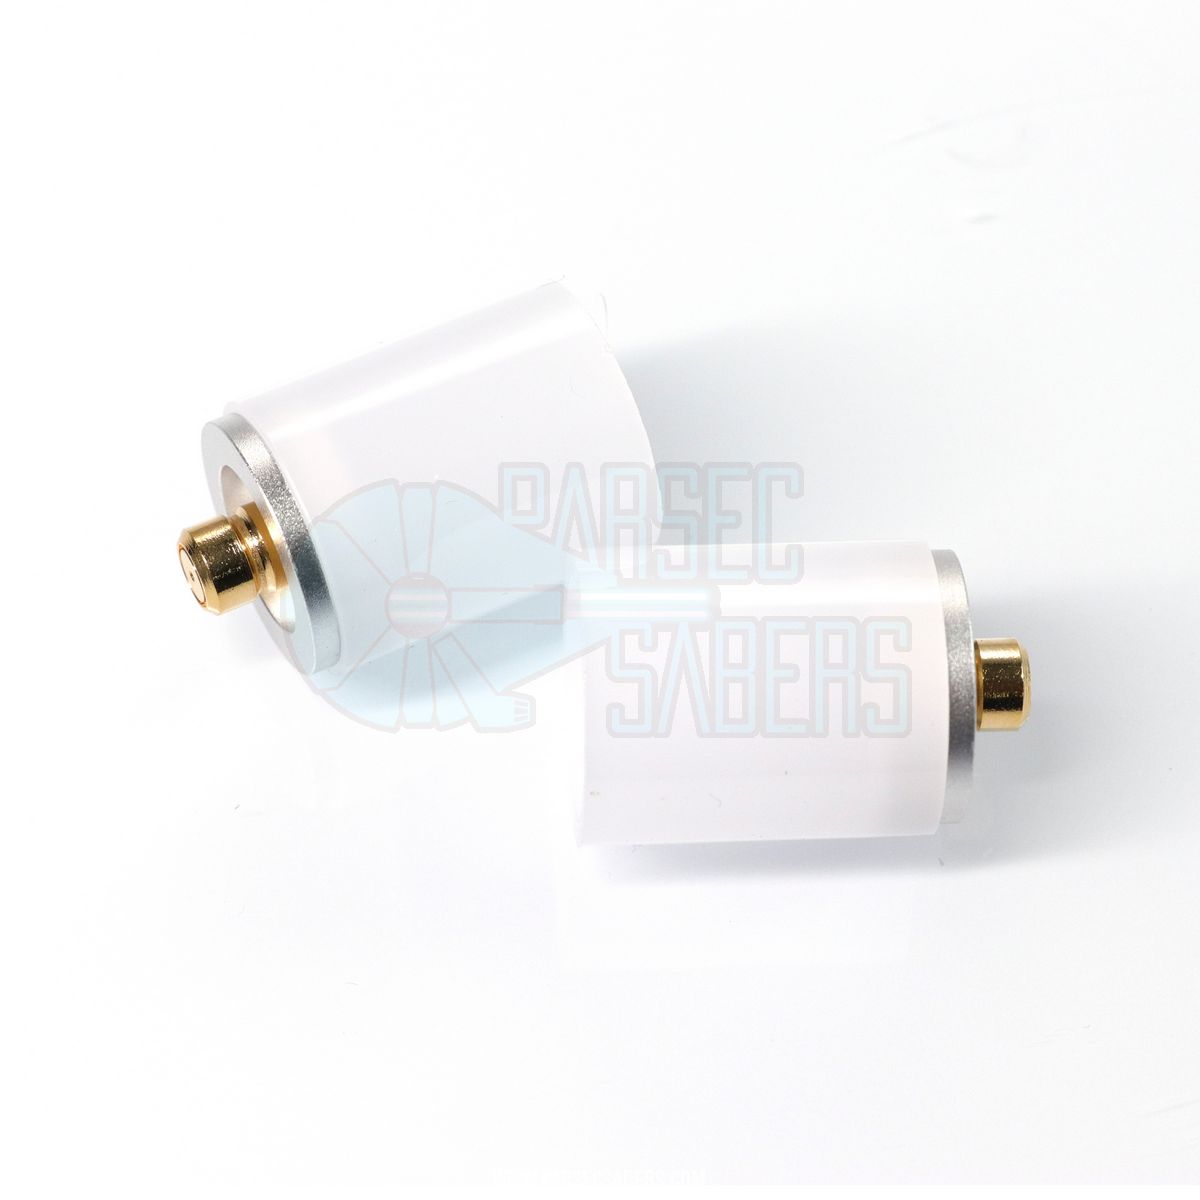 Short Base Lit Saber Plug - Parsec Saber Accessory & Add-on